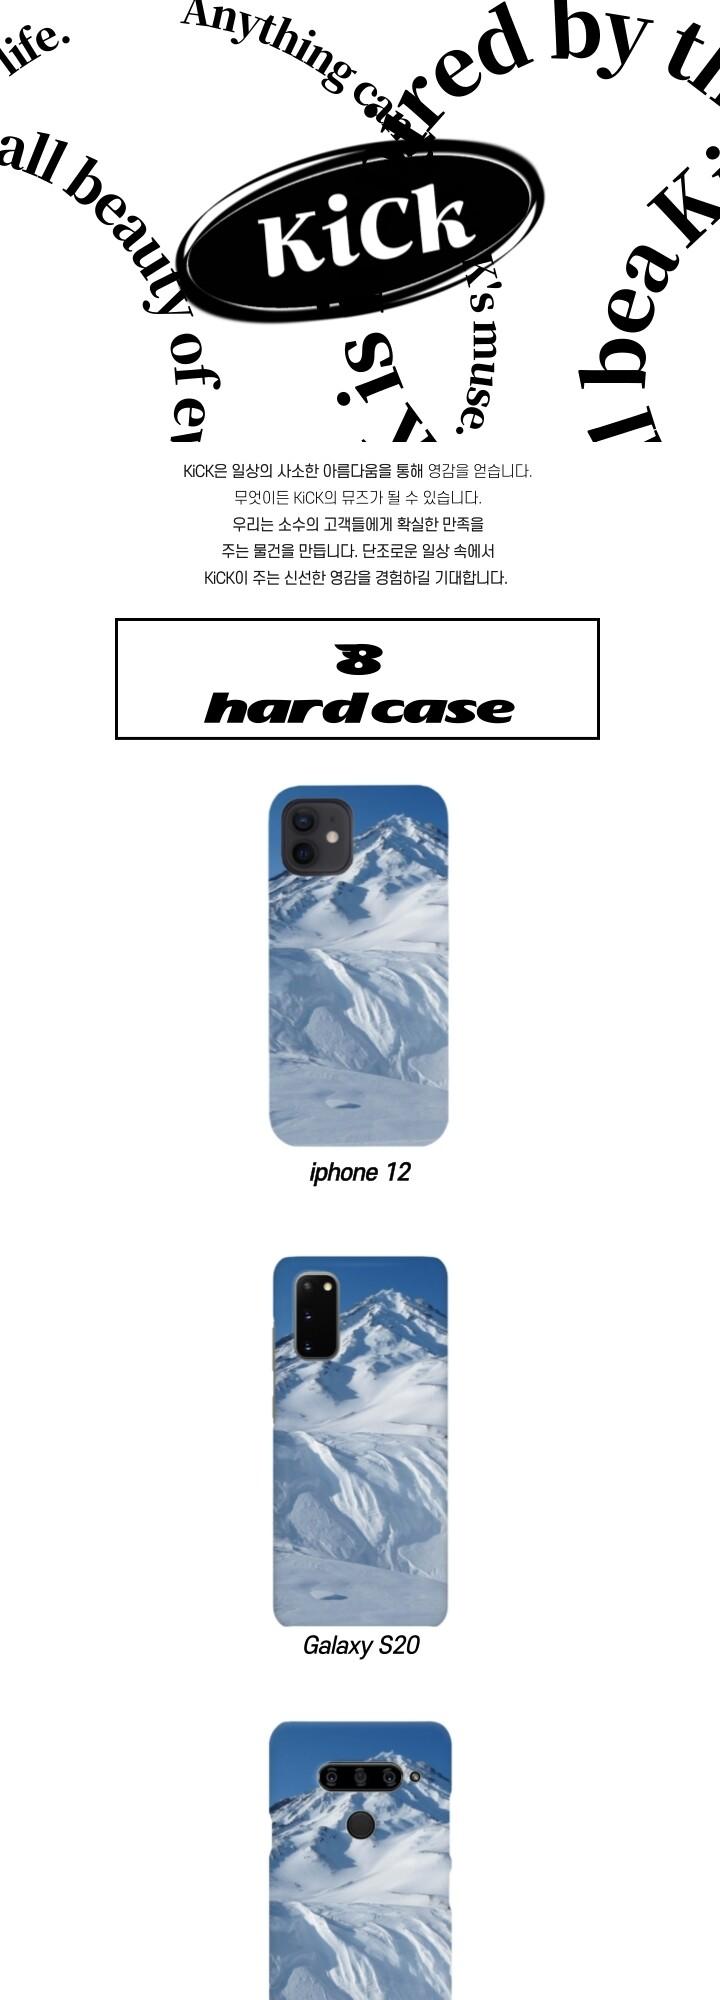 8 Hard Case